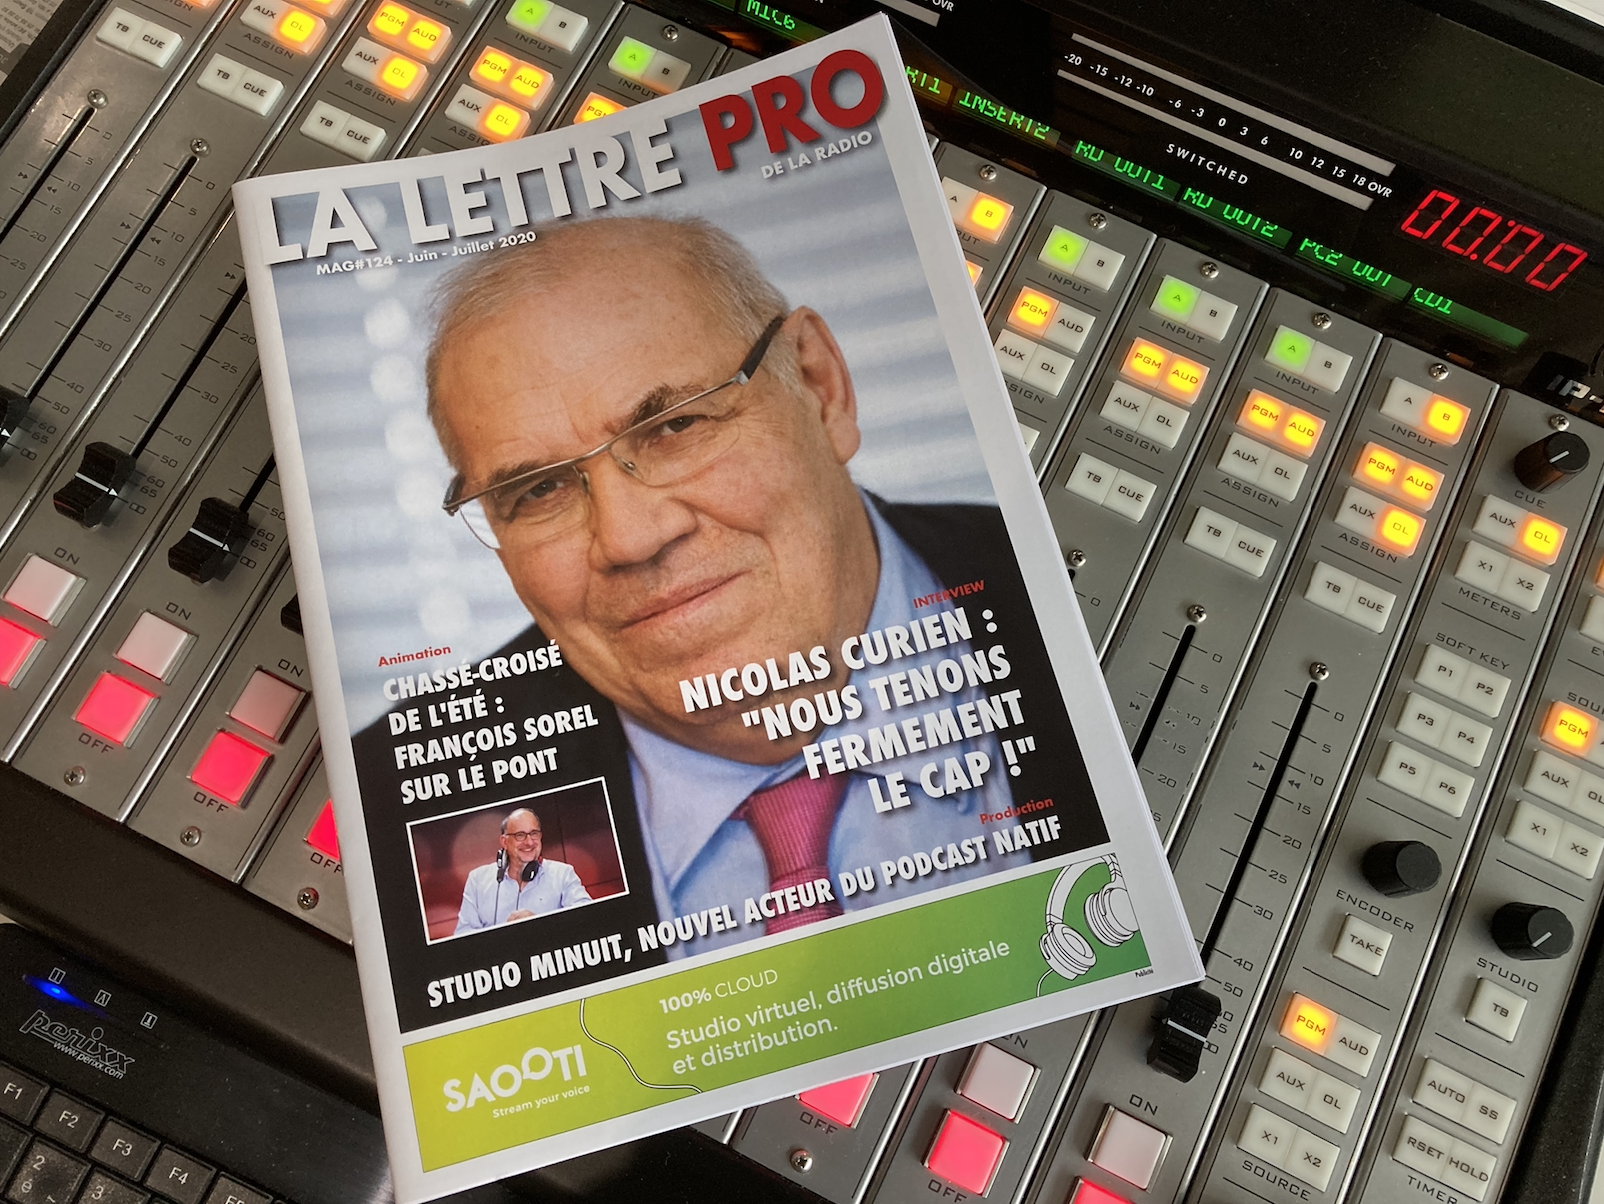 Abonnez-vous à La Lettre Pro de la Radio !